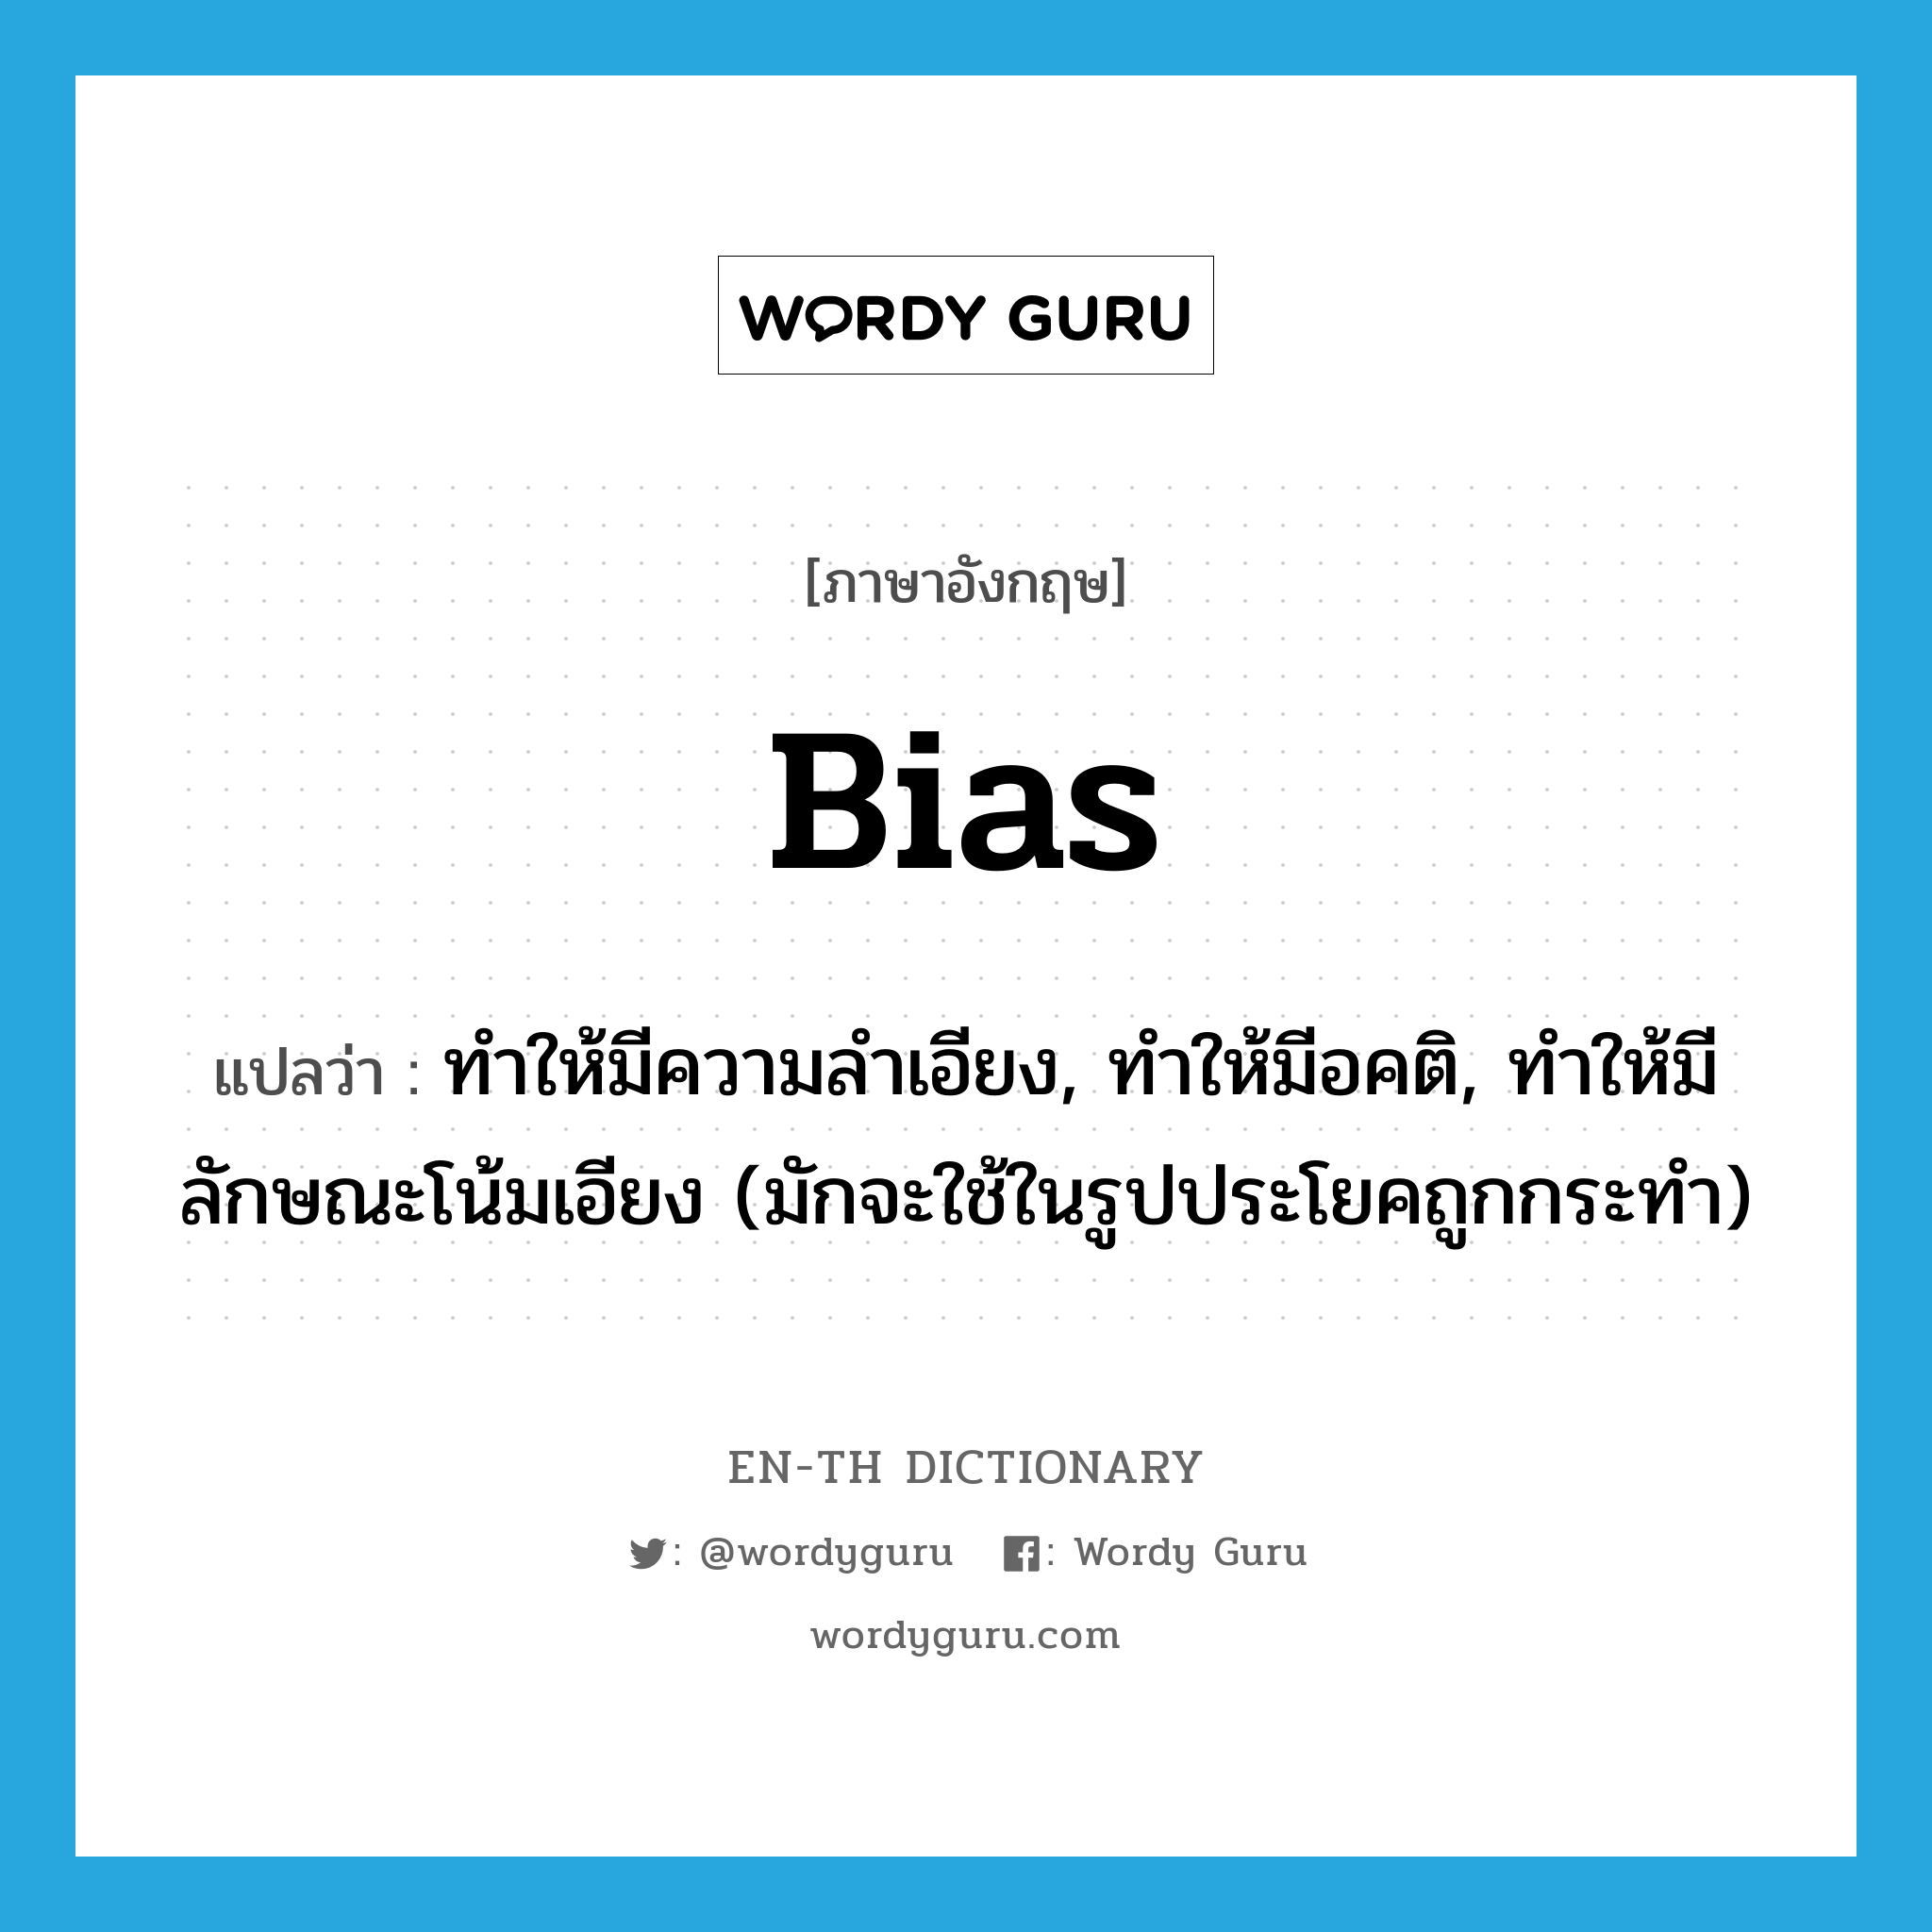 bias แปลว่า?, คำศัพท์ภาษาอังกฤษ bias แปลว่า ทำให้มีความลำเอียง, ทำให้มีอคติ, ทำให้มีลักษณะโน้มเอียง (มักจะใช้ในรูปประโยคถูกกระทำ) ประเภท VT หมวด VT